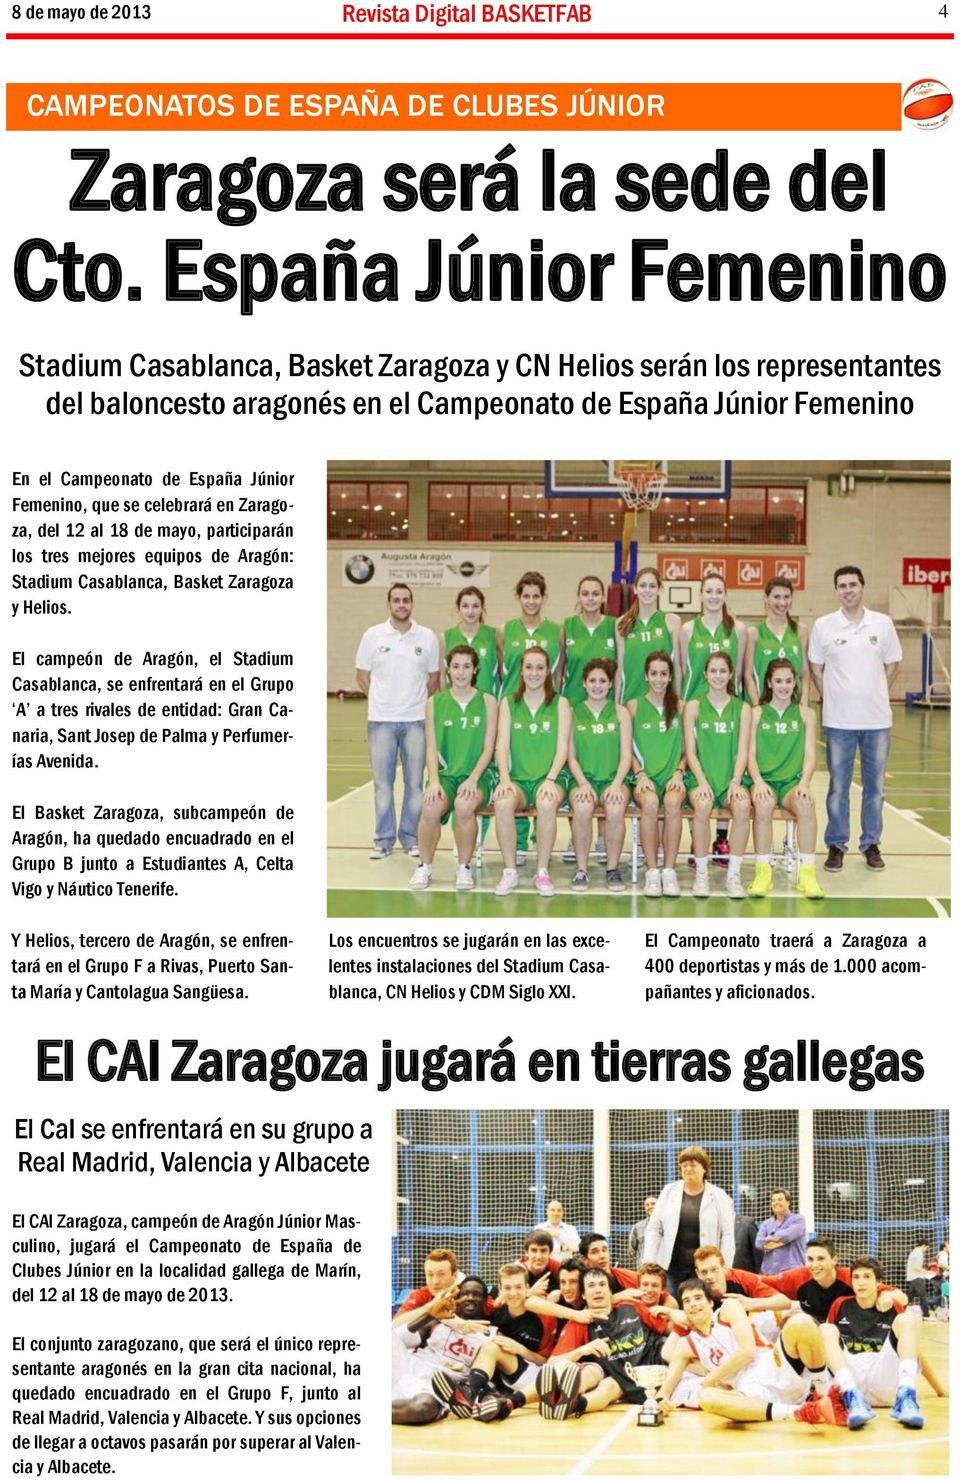 Femenino, que se celebrará en Zaragoza, del 12 al 18 de mayo, participarán los tres mejores equipos de Aragón: Stadium Casablanca, Basket Zaragoza y Helios.